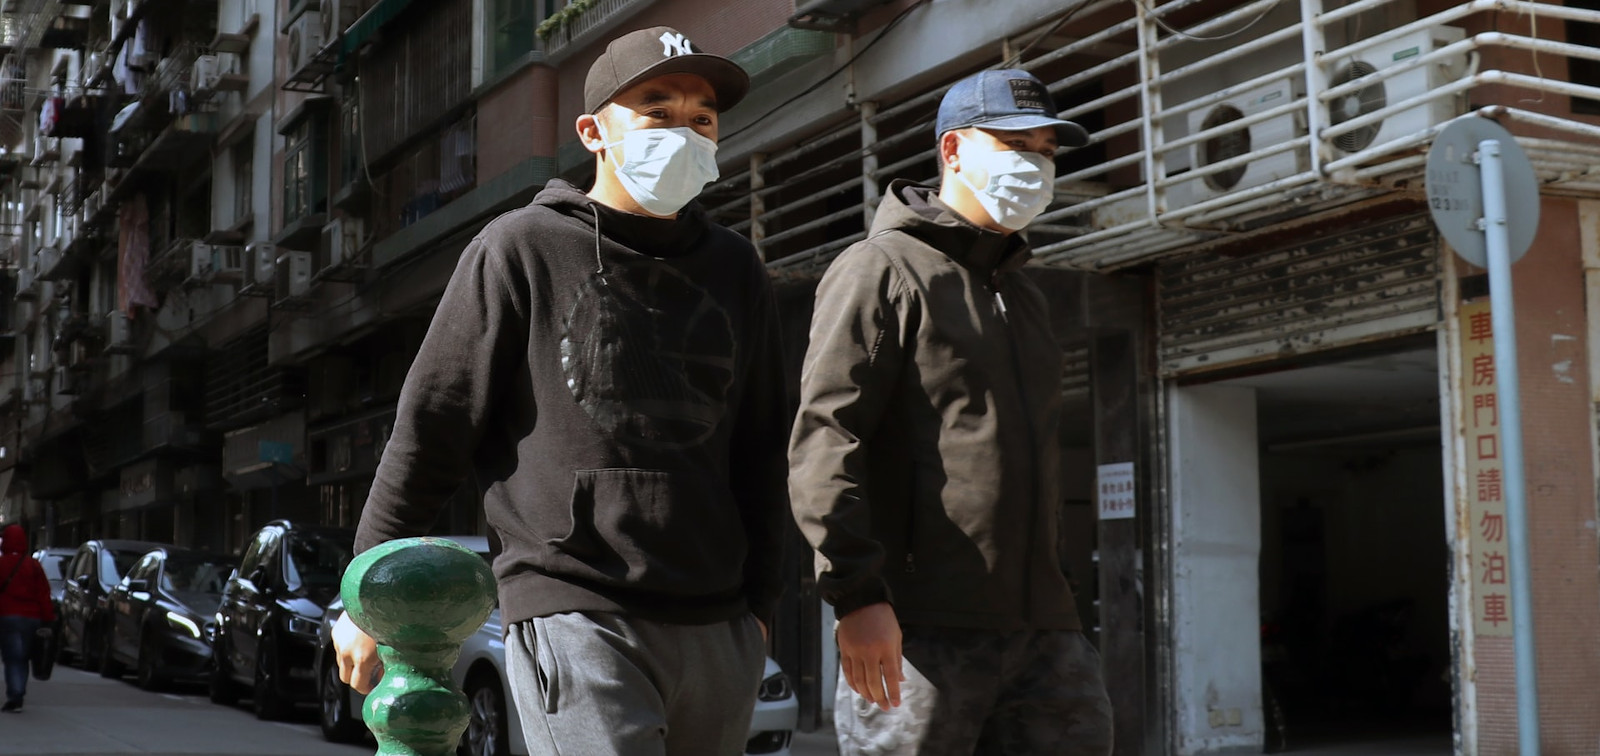 Men wearing mask due to coronavirus